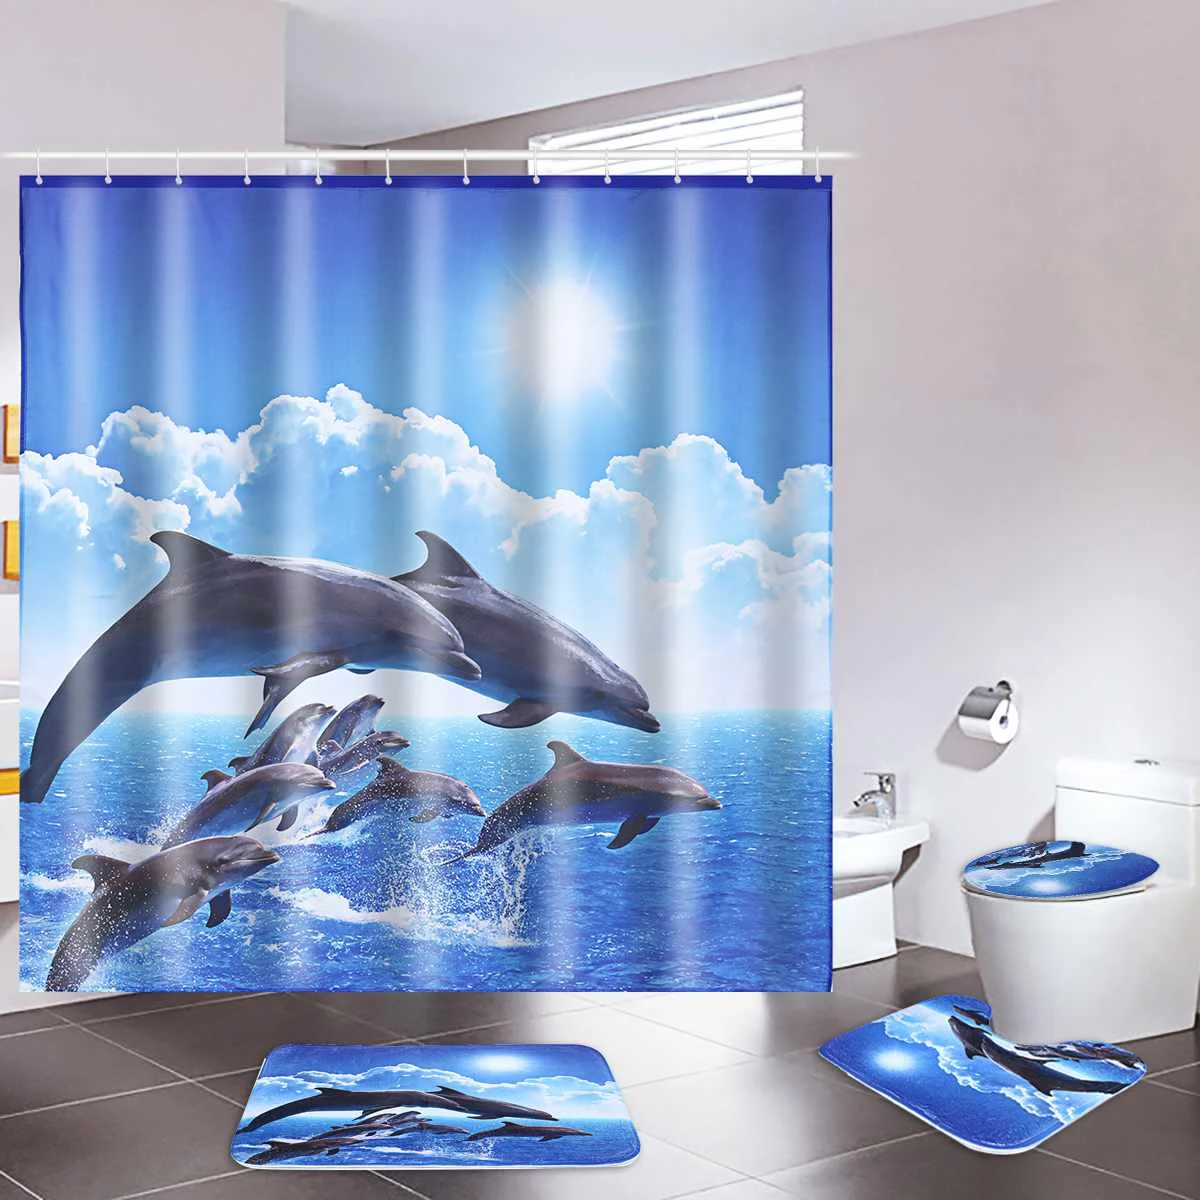 Дельфины прыжки занавески для душа ванная комната водонепроницаемый полиэстер коврик для ванной пьедестал ковер крышка унитаза океан печать художественный Декор